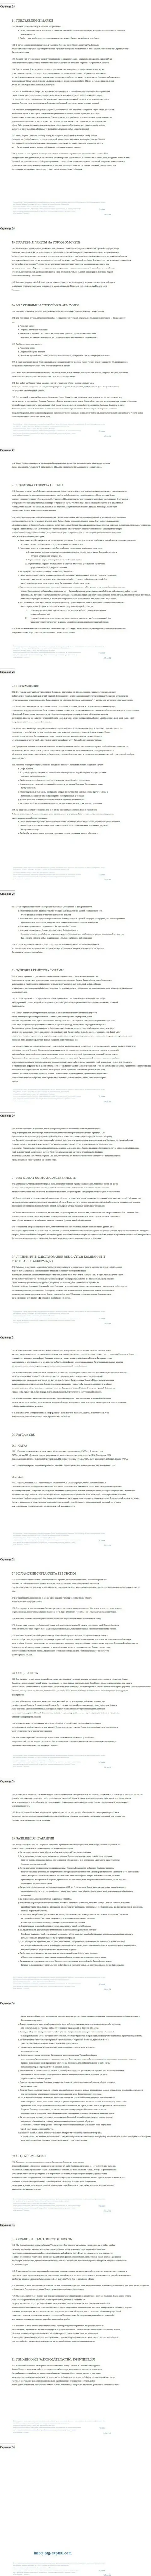 Часть третья пользовательского соглашения дилингового центра BTGCapital